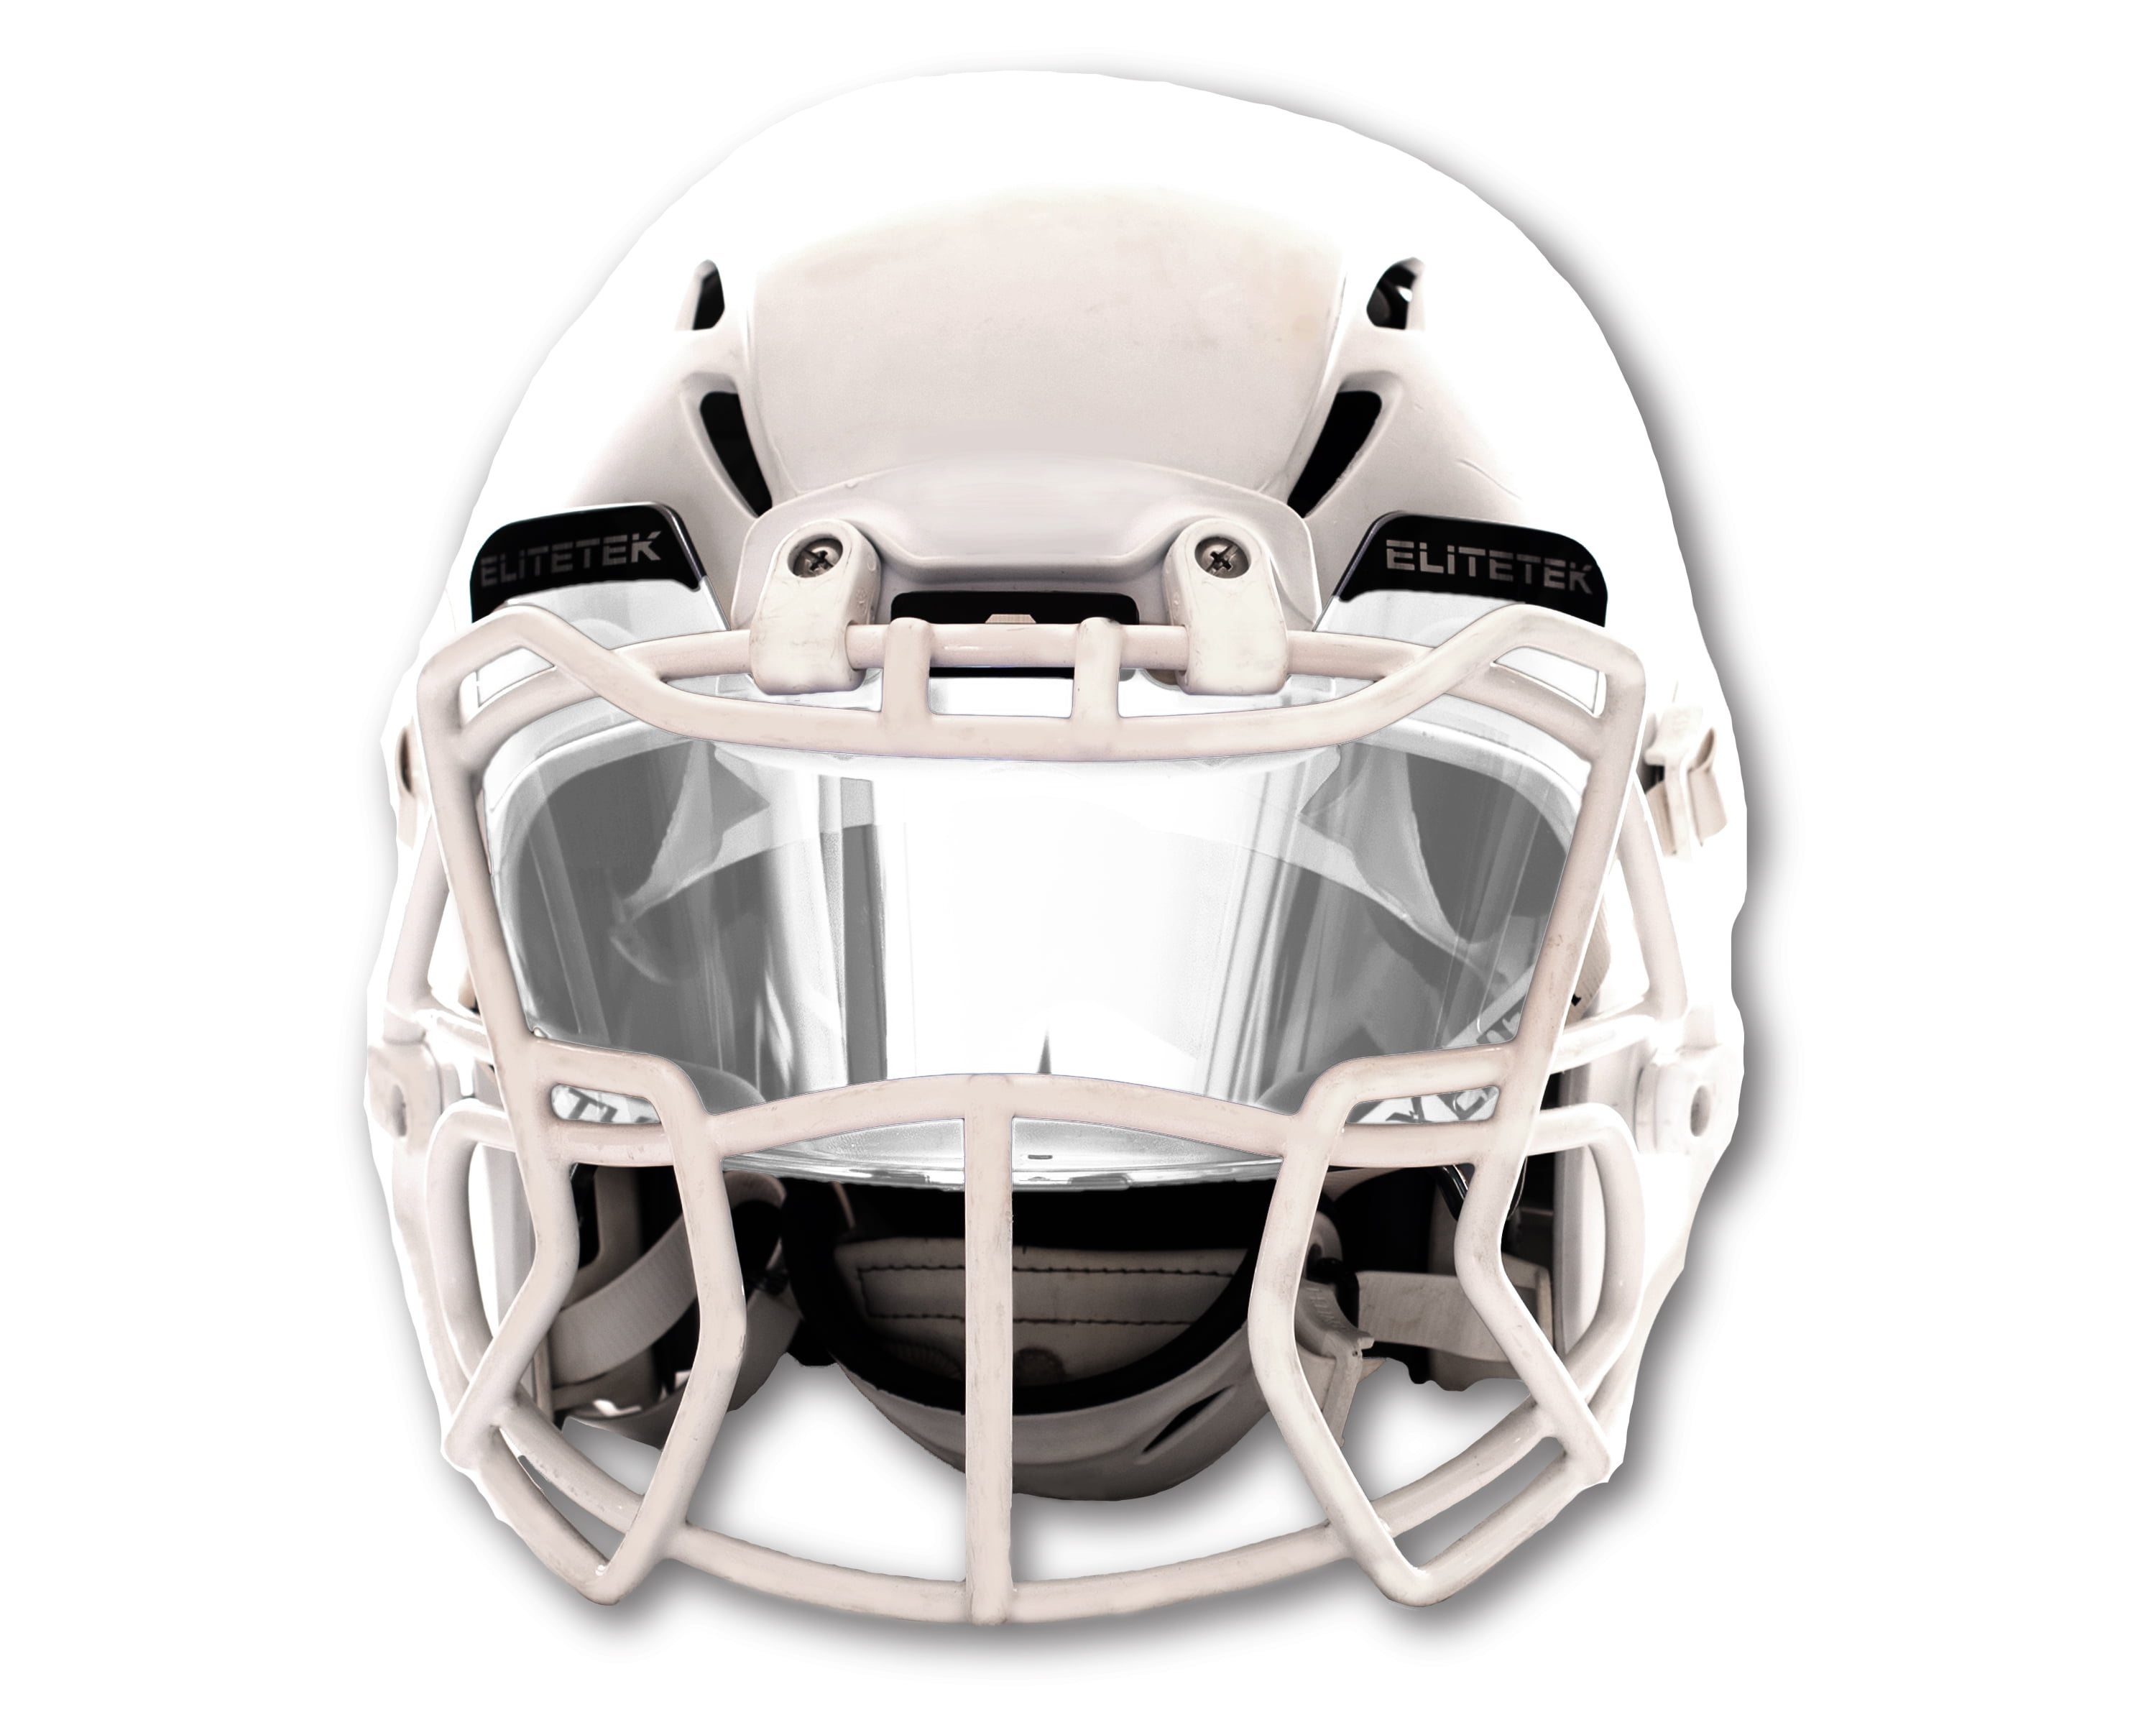 Transparent Purple Football Visor for Riddell Xenith & other Brand Helmets 